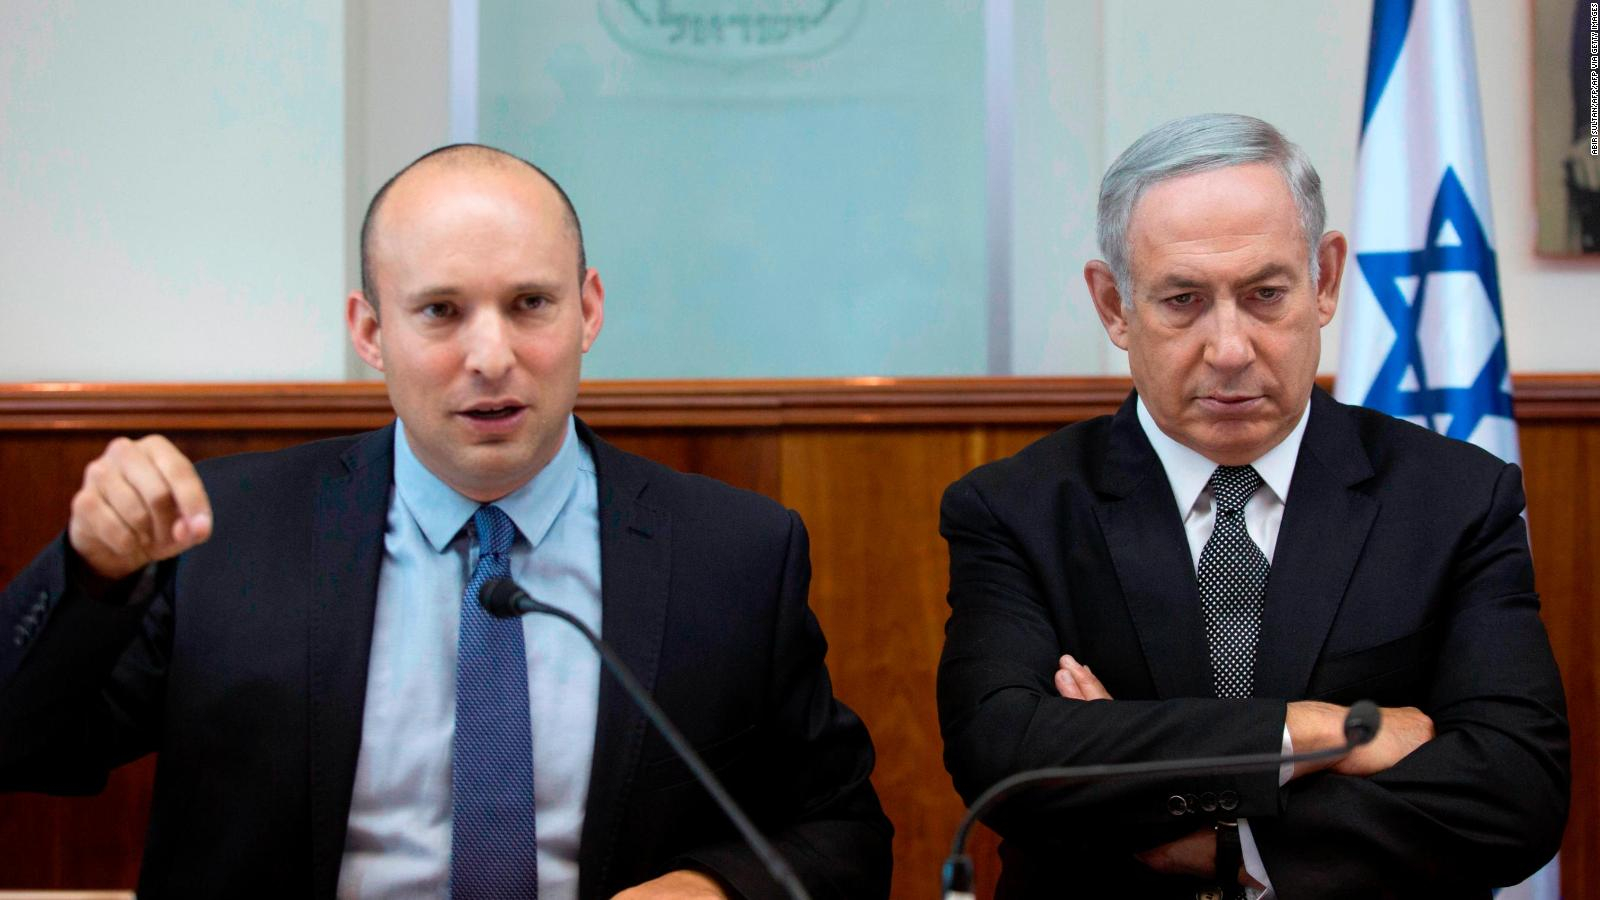 Noul premier al Israelului a fost în trupele de comando, e ortodox modern și a încasat 275 milioane $ din vânzarea a două firme